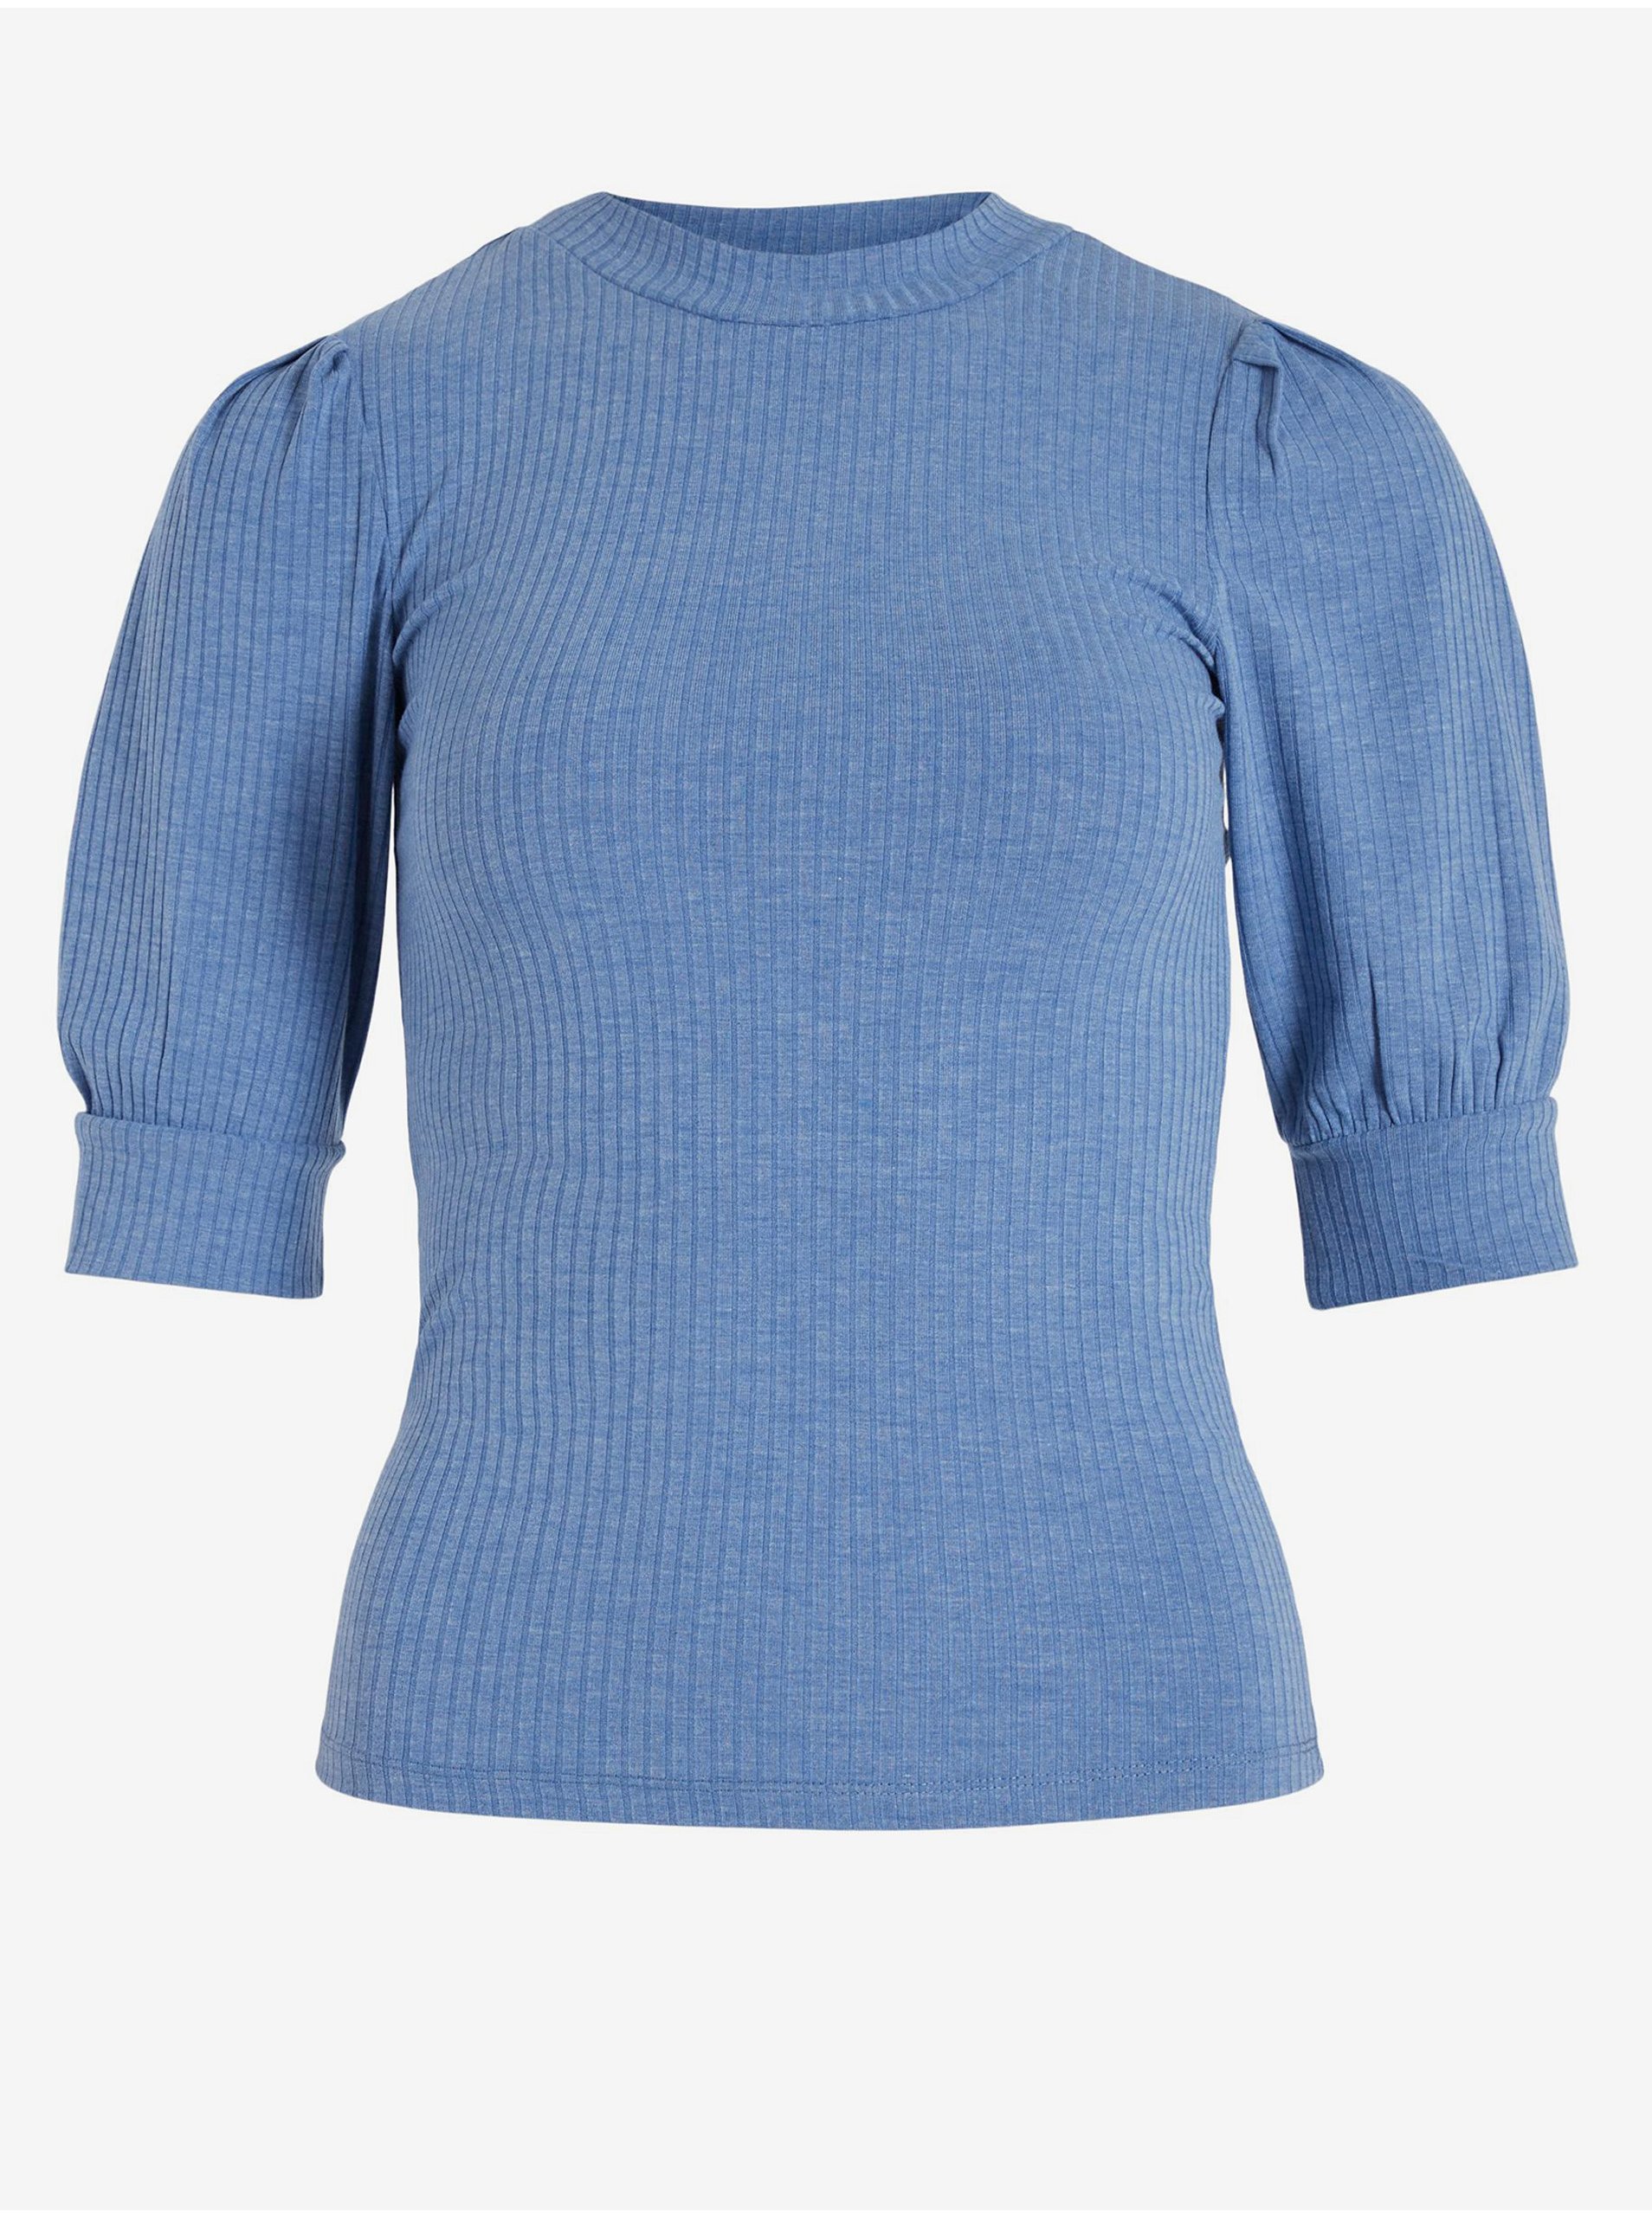 Blue Women's Ribbed T-Shirt VILA Felia - Ladies